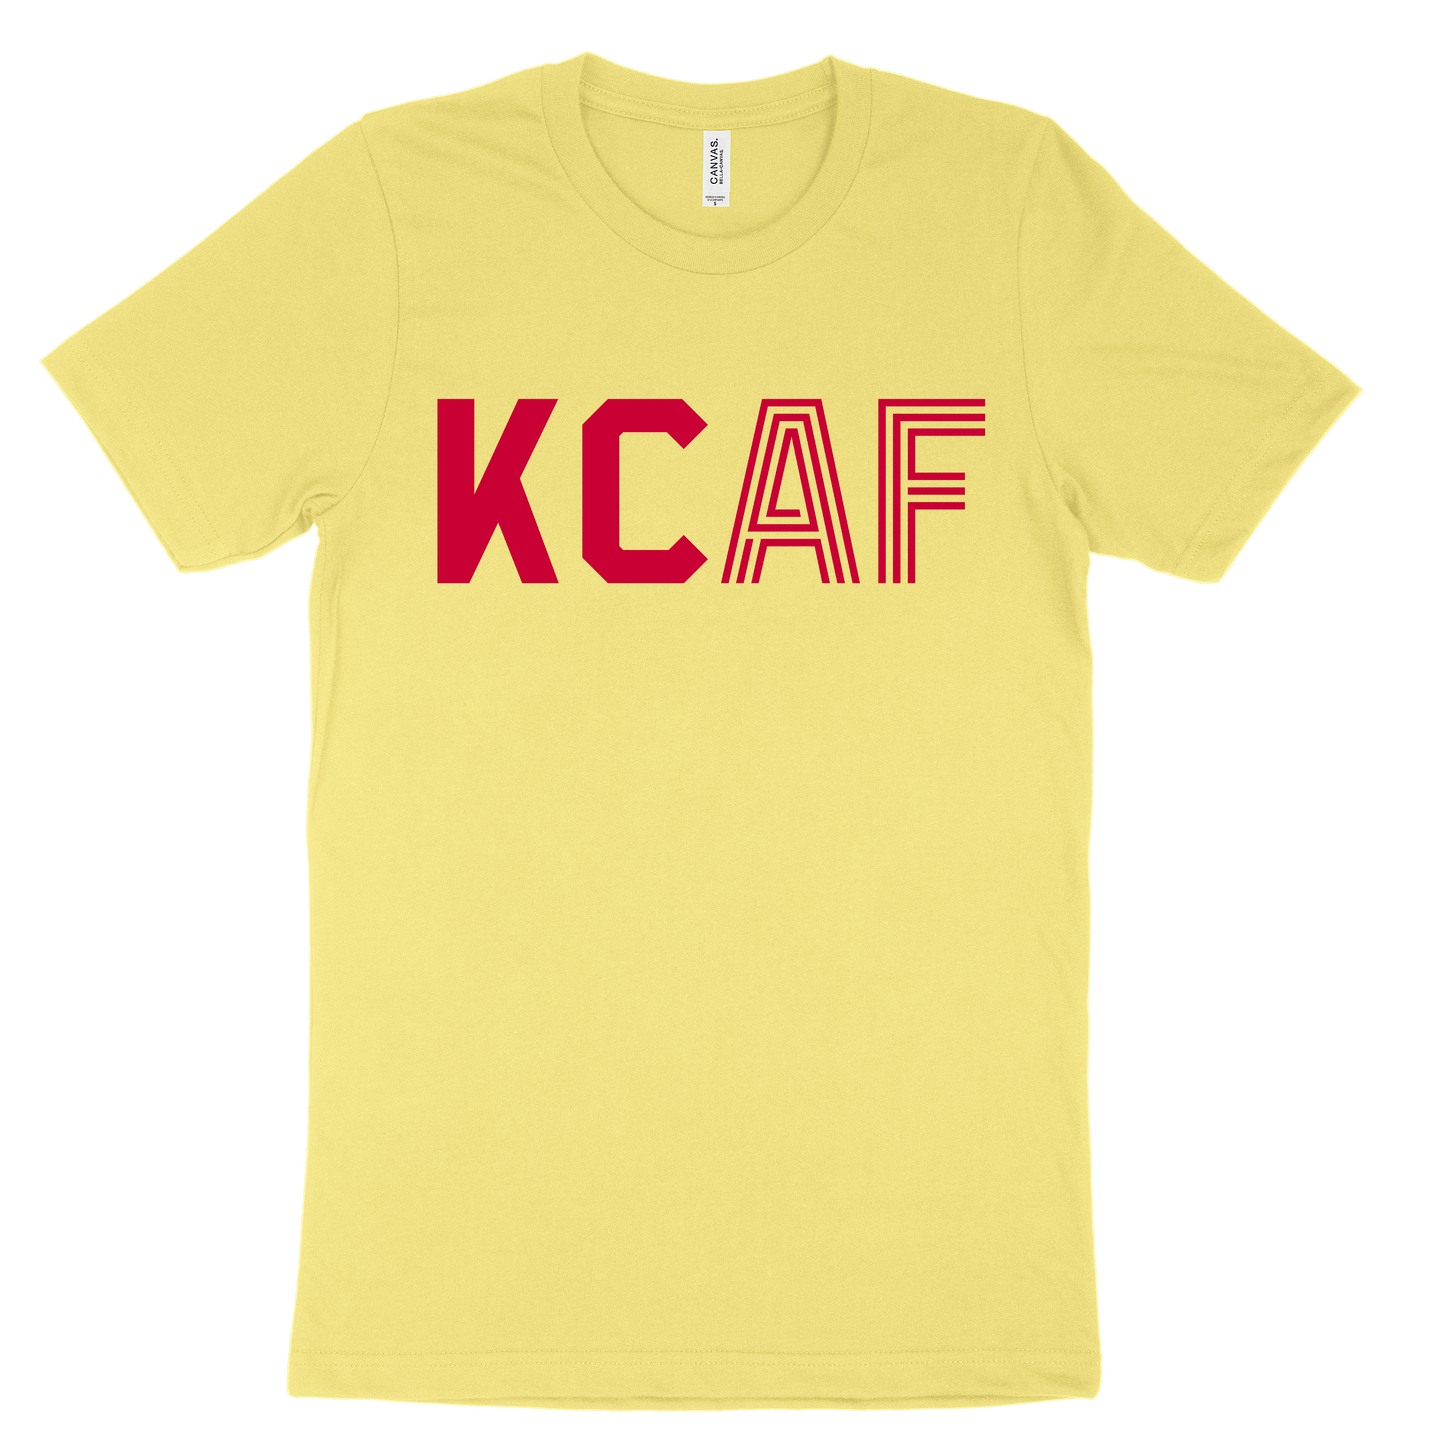 KCAF Tee - Yellow